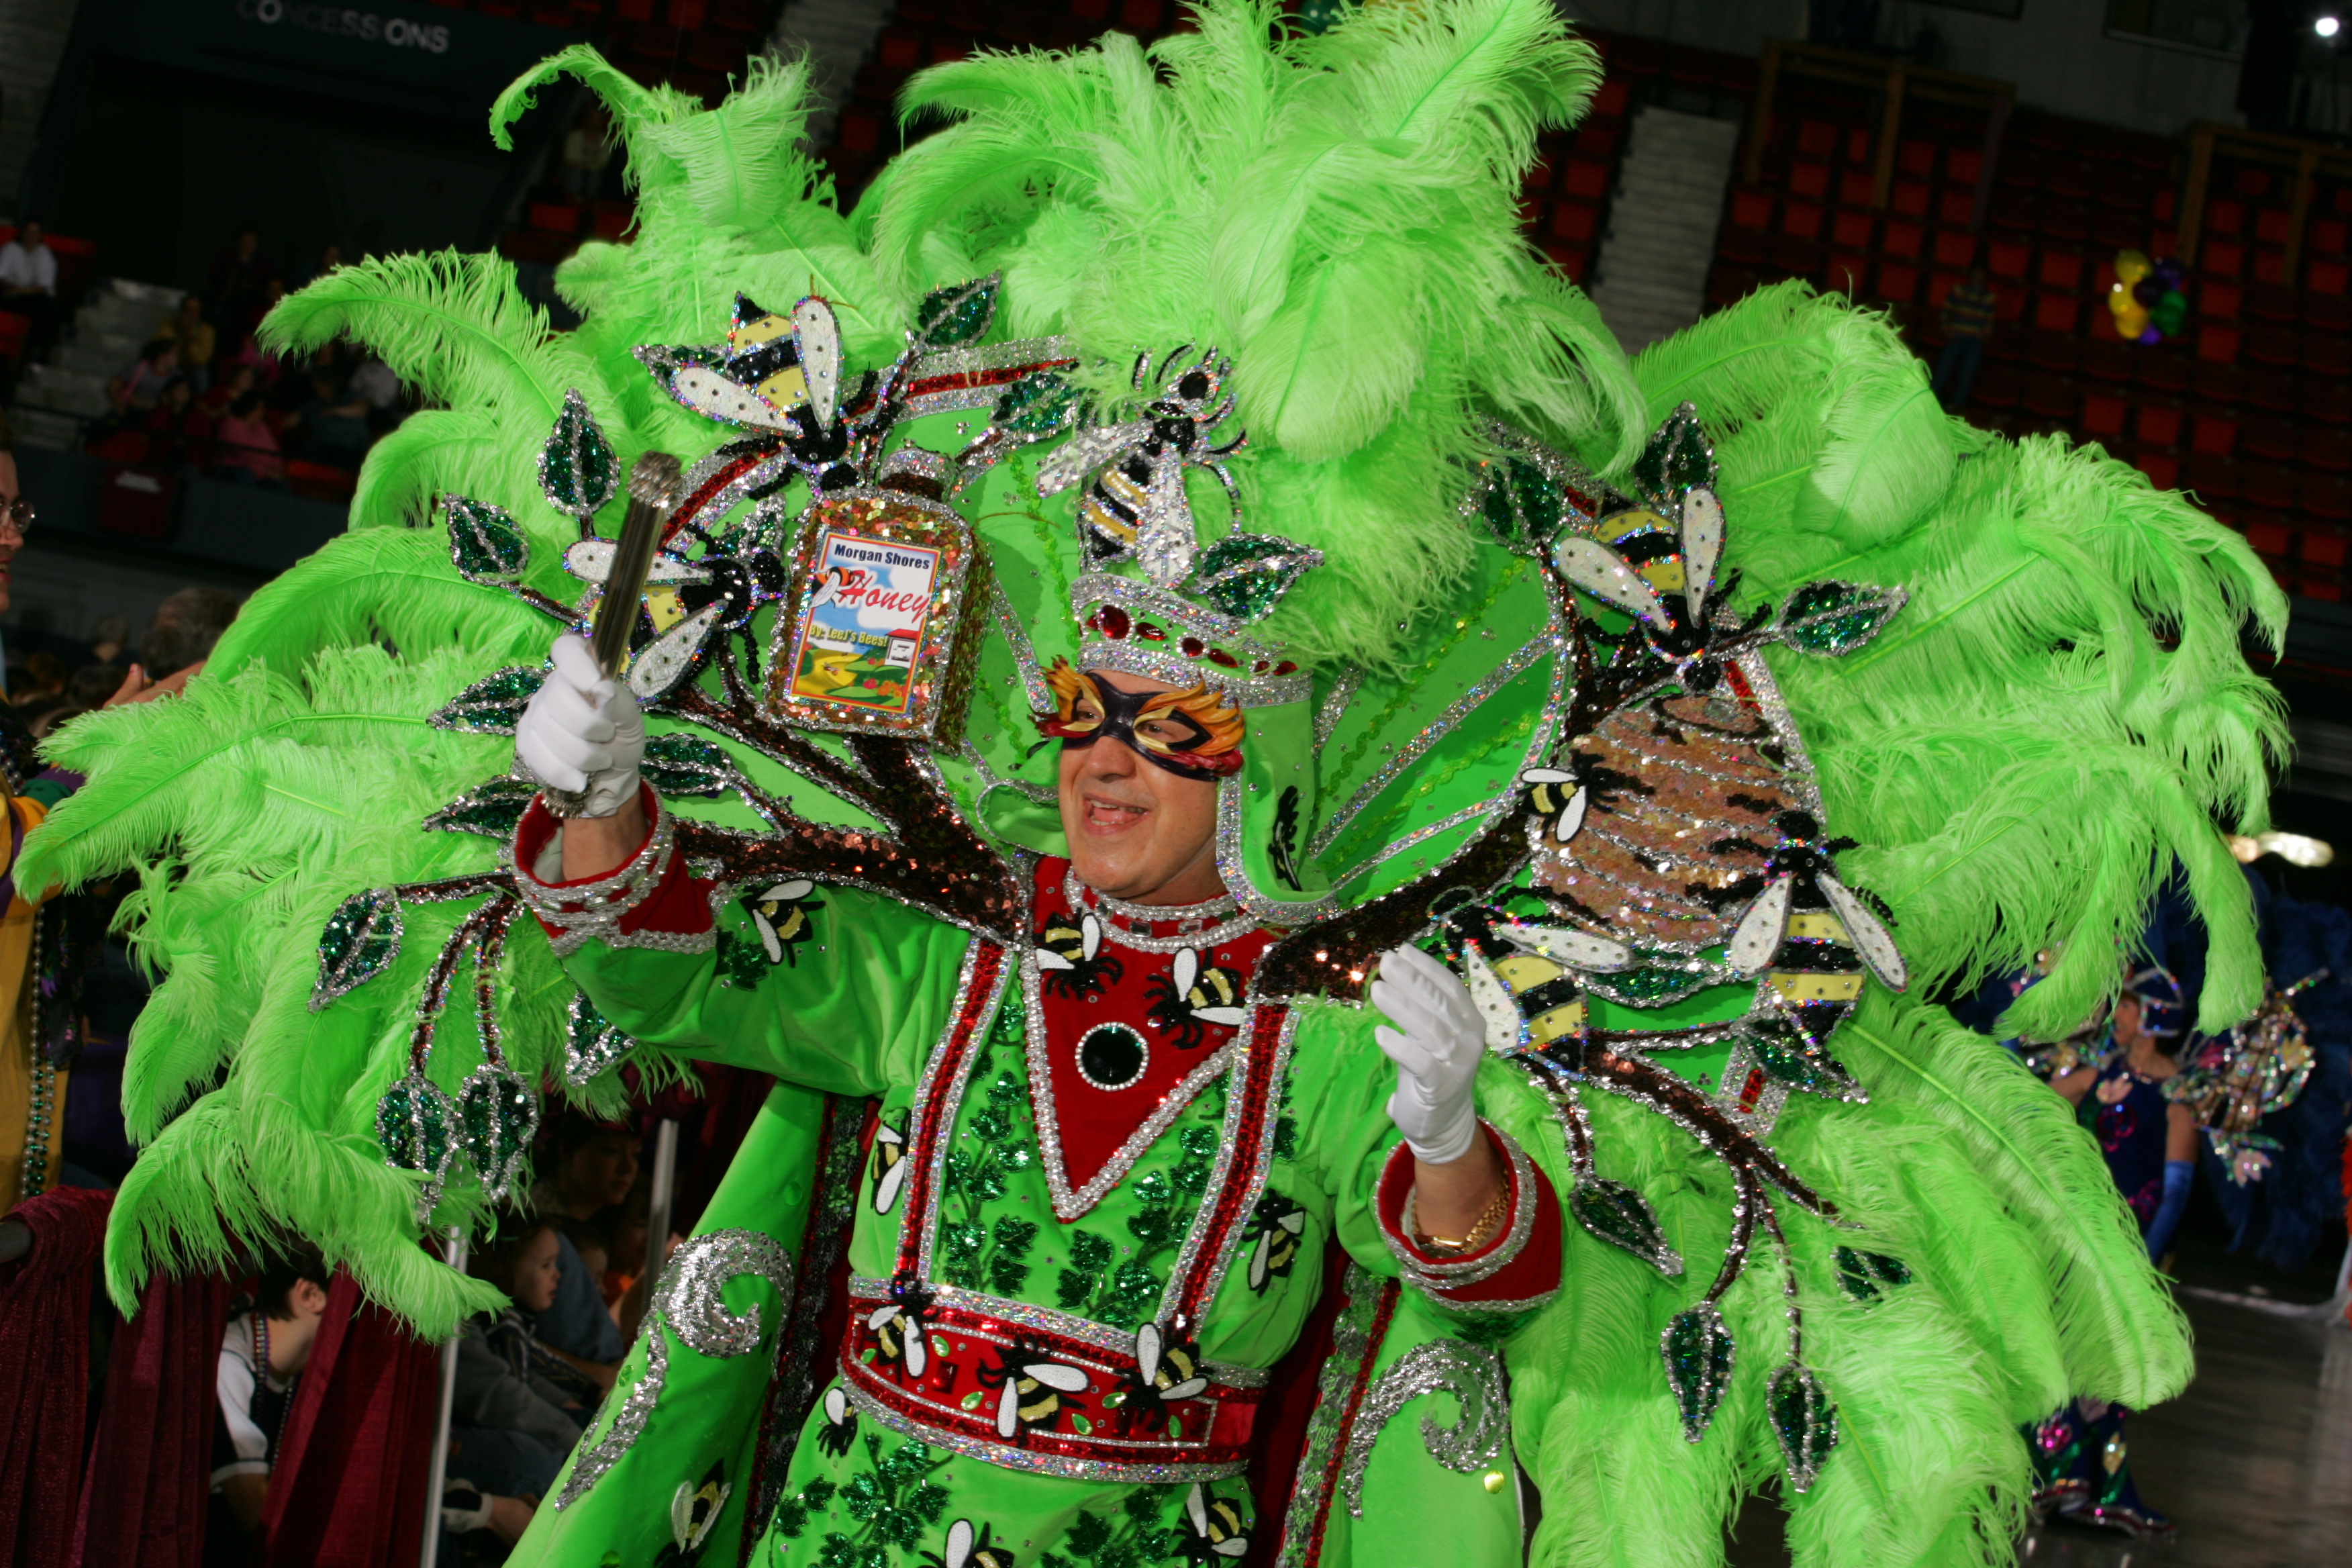 Miss Louisiana Mardi Gras